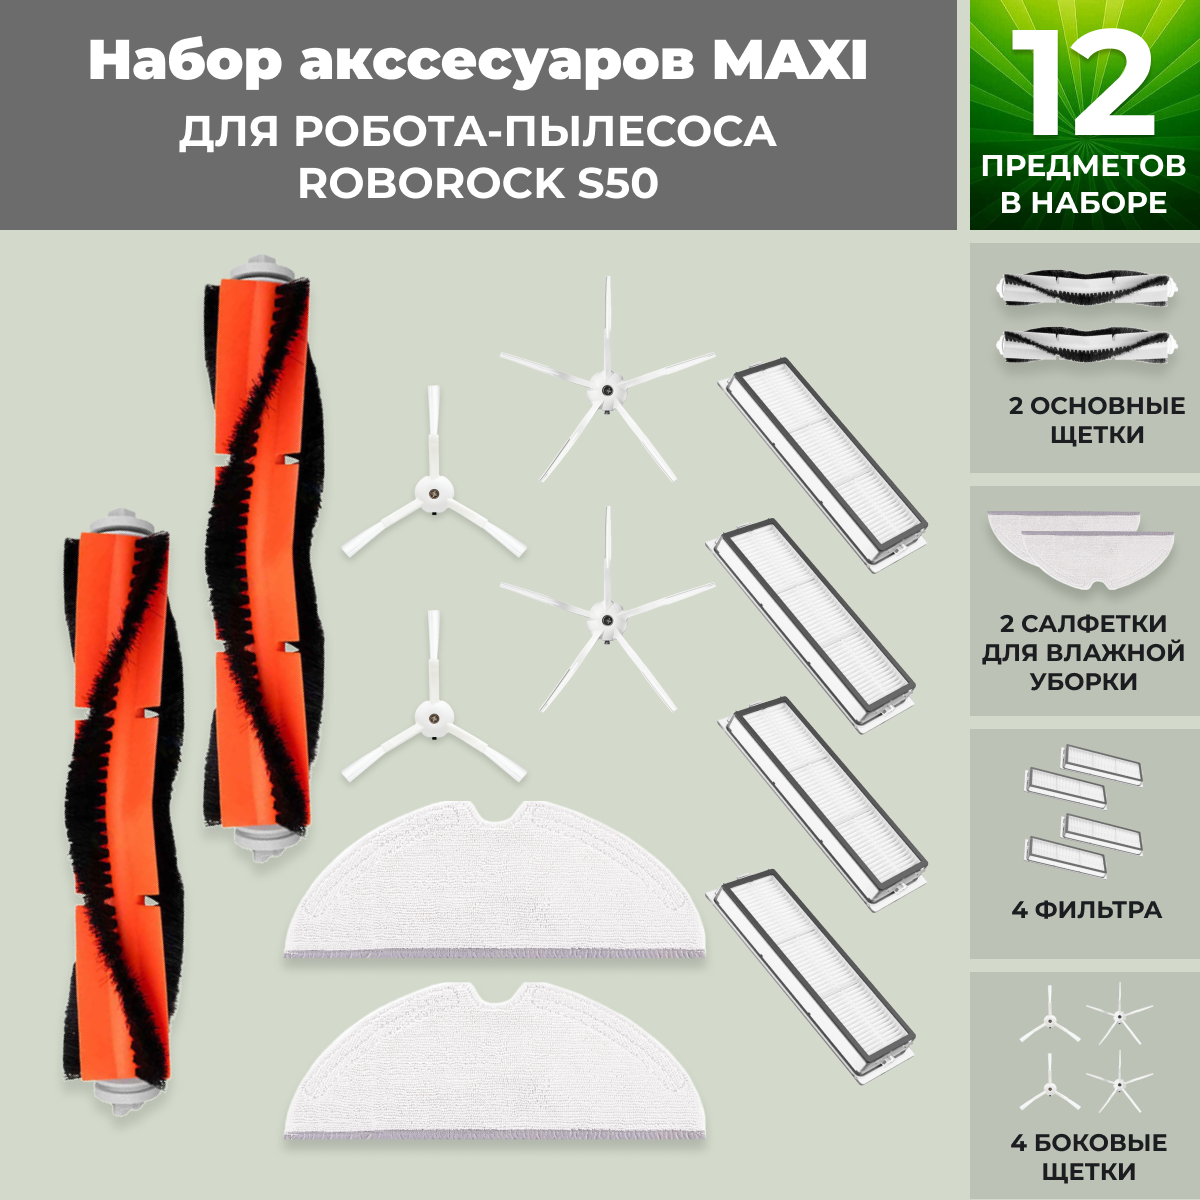 Набор аксессуаров Maxi для робота-пылесоса Roborock S50, белые боковые щетки 558655, фото 1